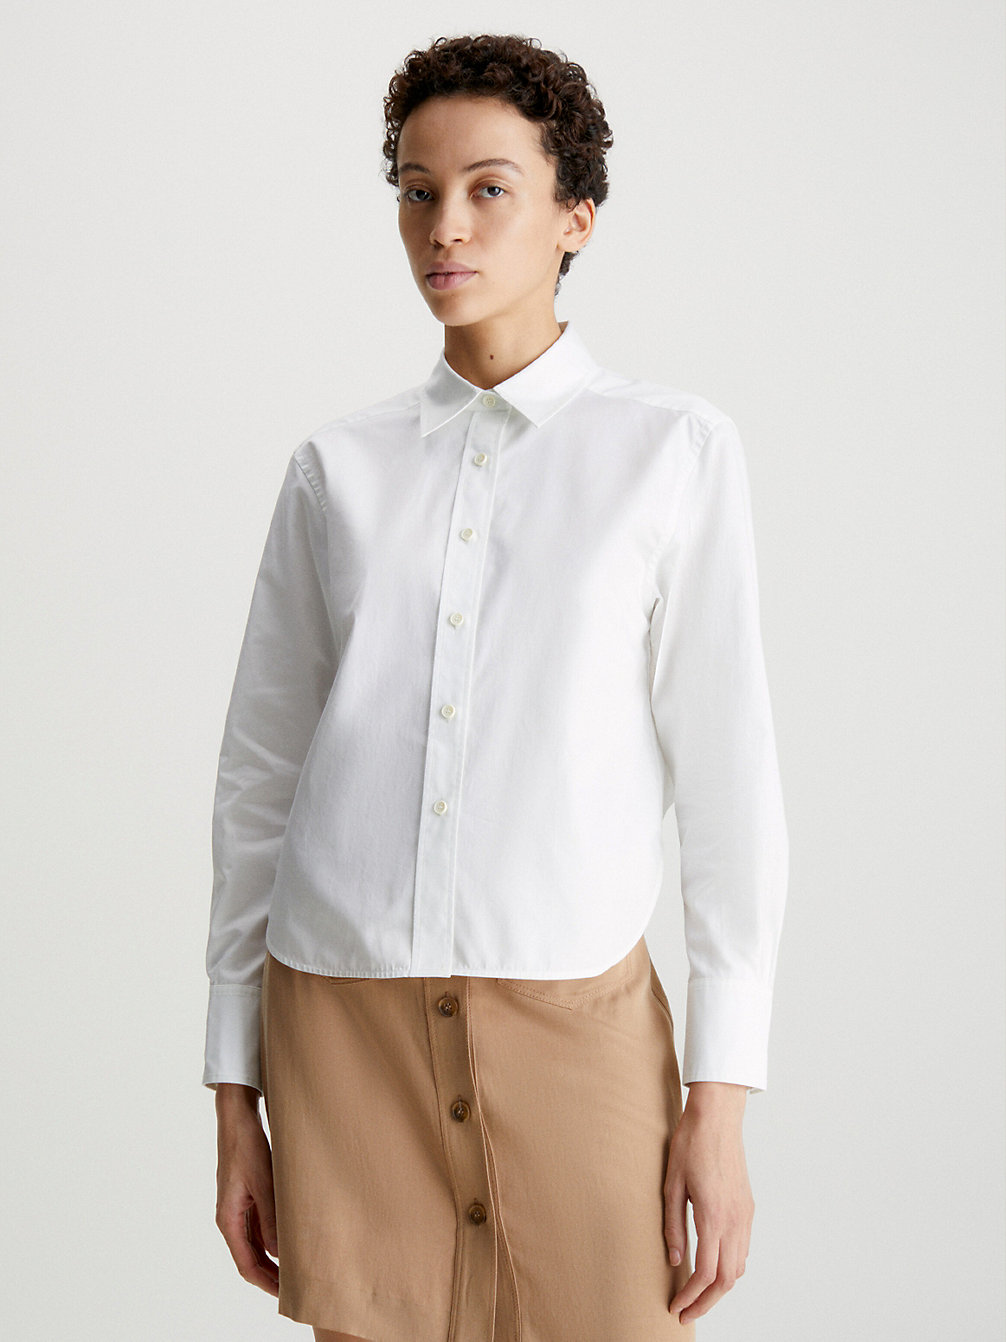 BRIGHT WHITE > Swobodna Koszula Z Krótkim Tyłem > undefined Kobiety - Calvin Klein